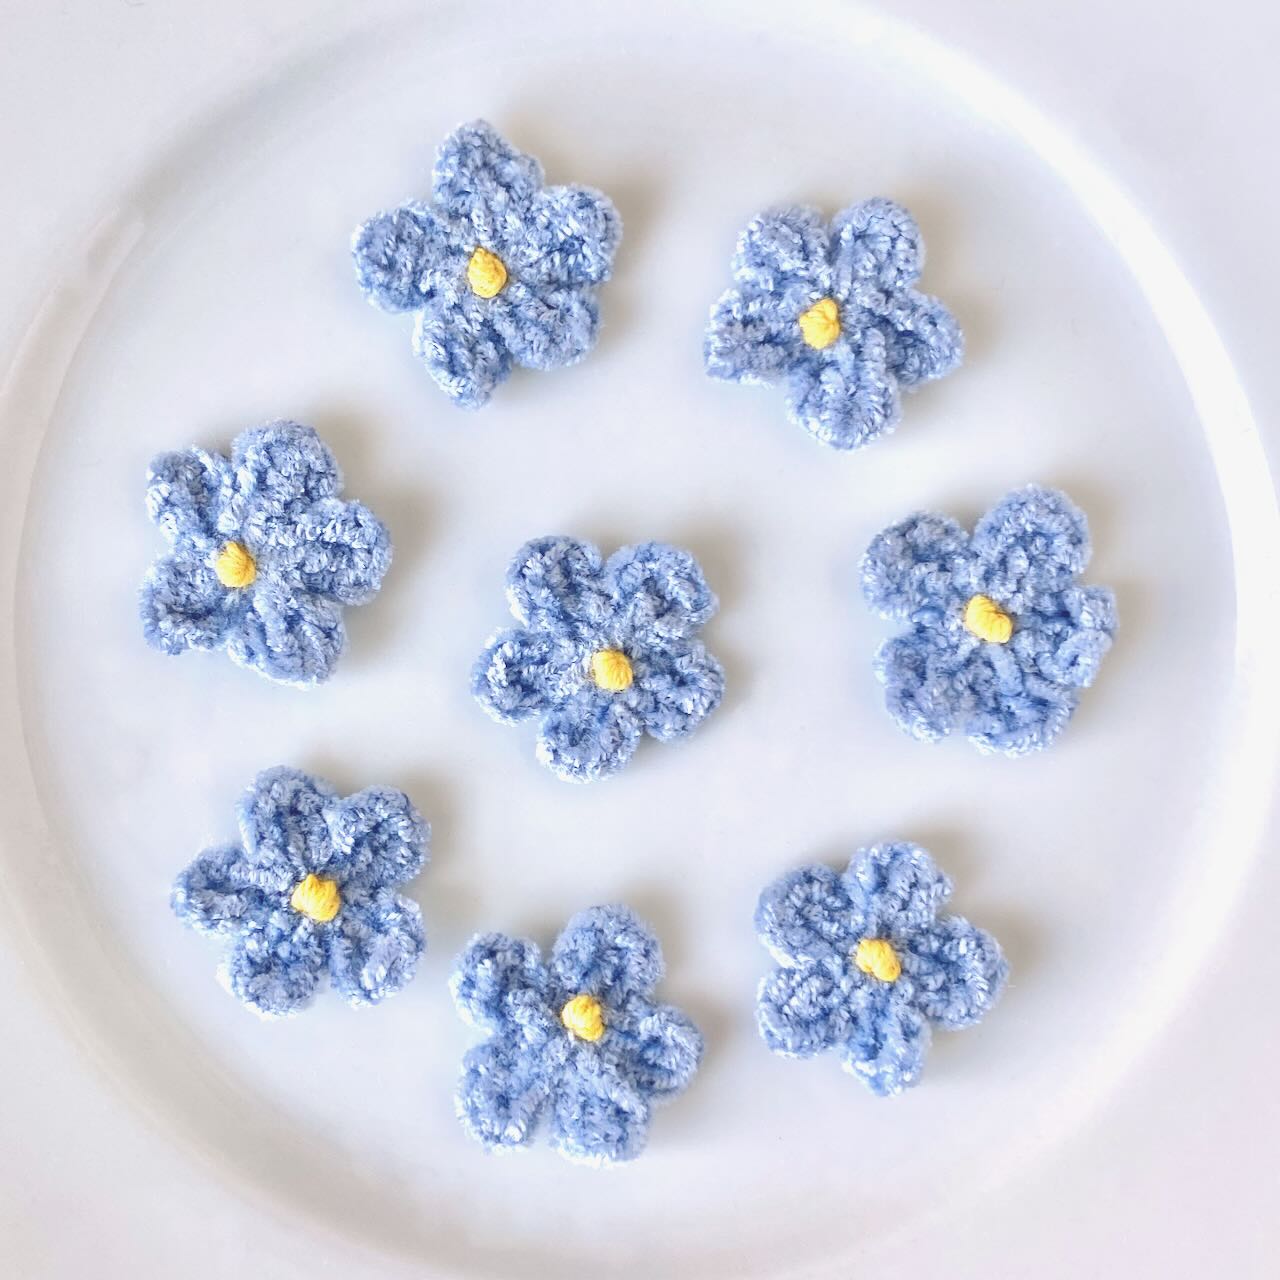     Chenille_Crochet_Flower